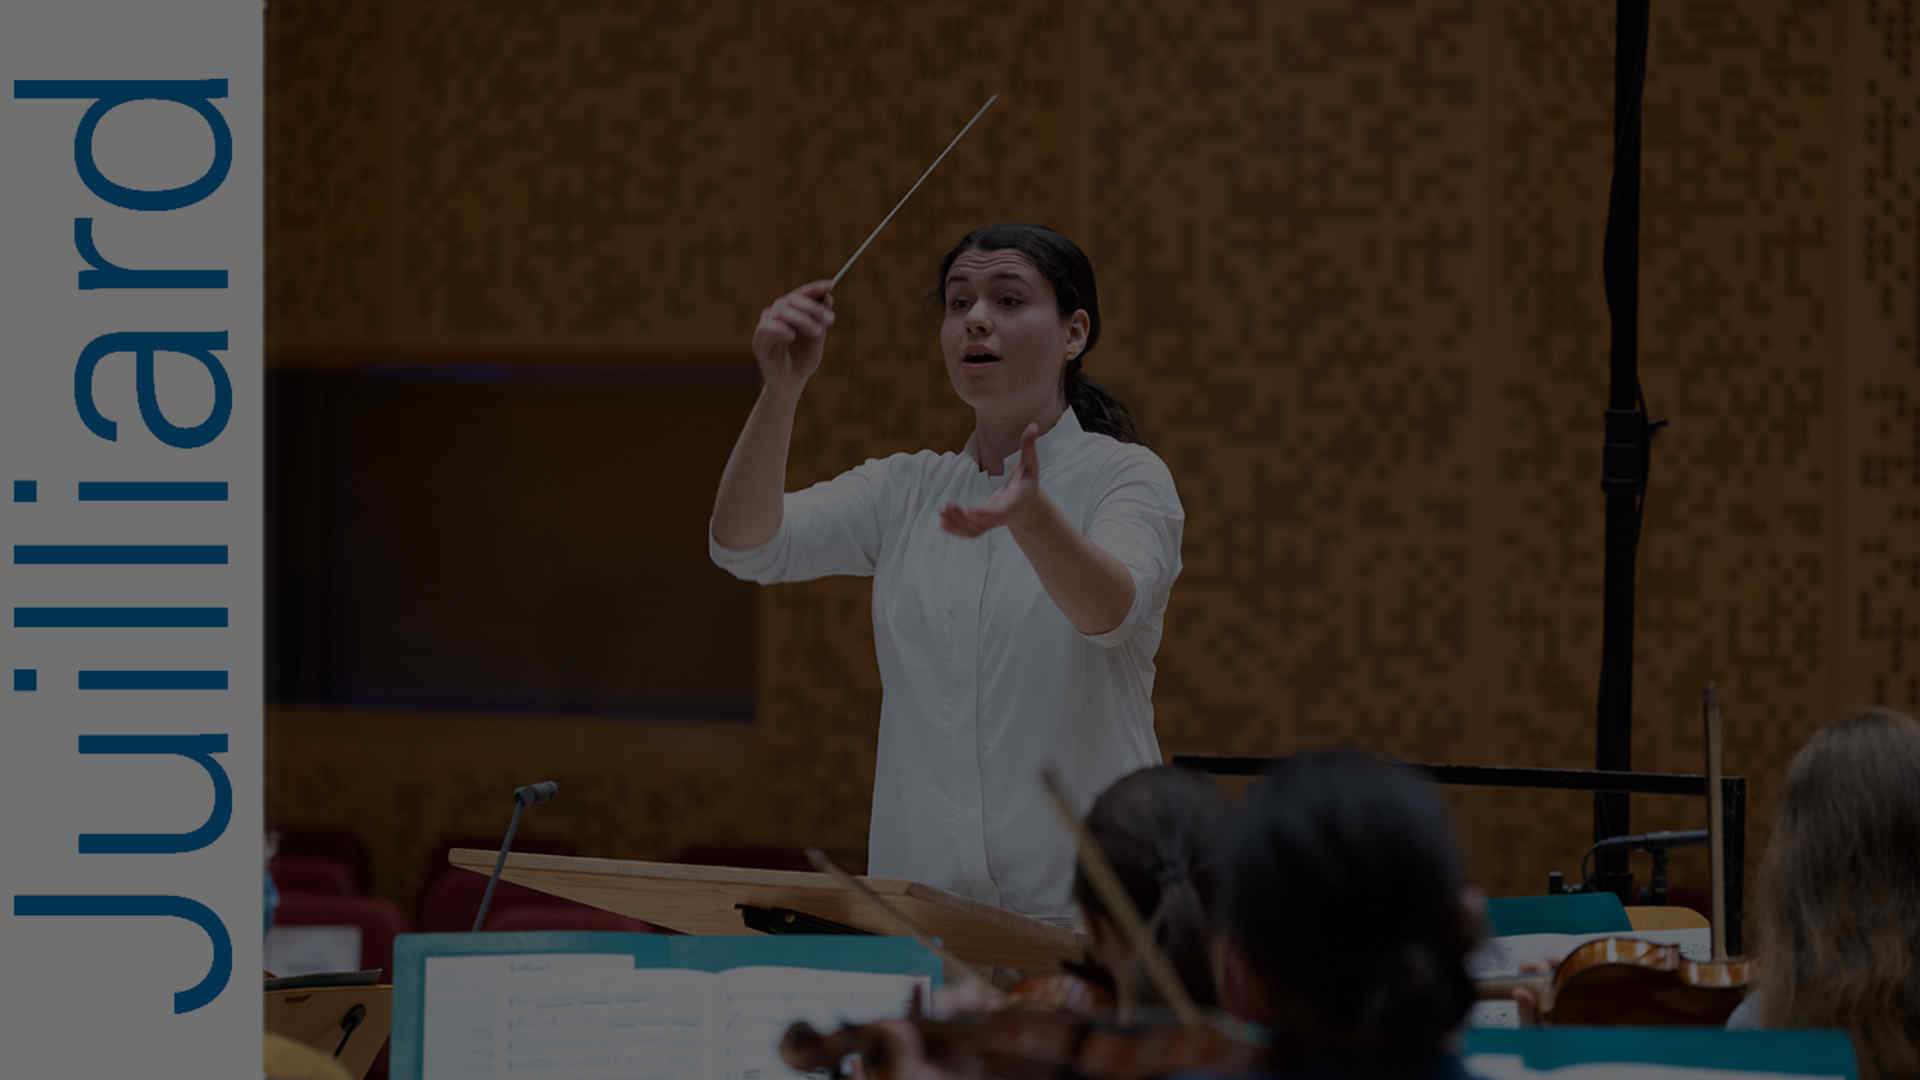 Juilliard orchestral conducting student Shira Samuels-Shragg